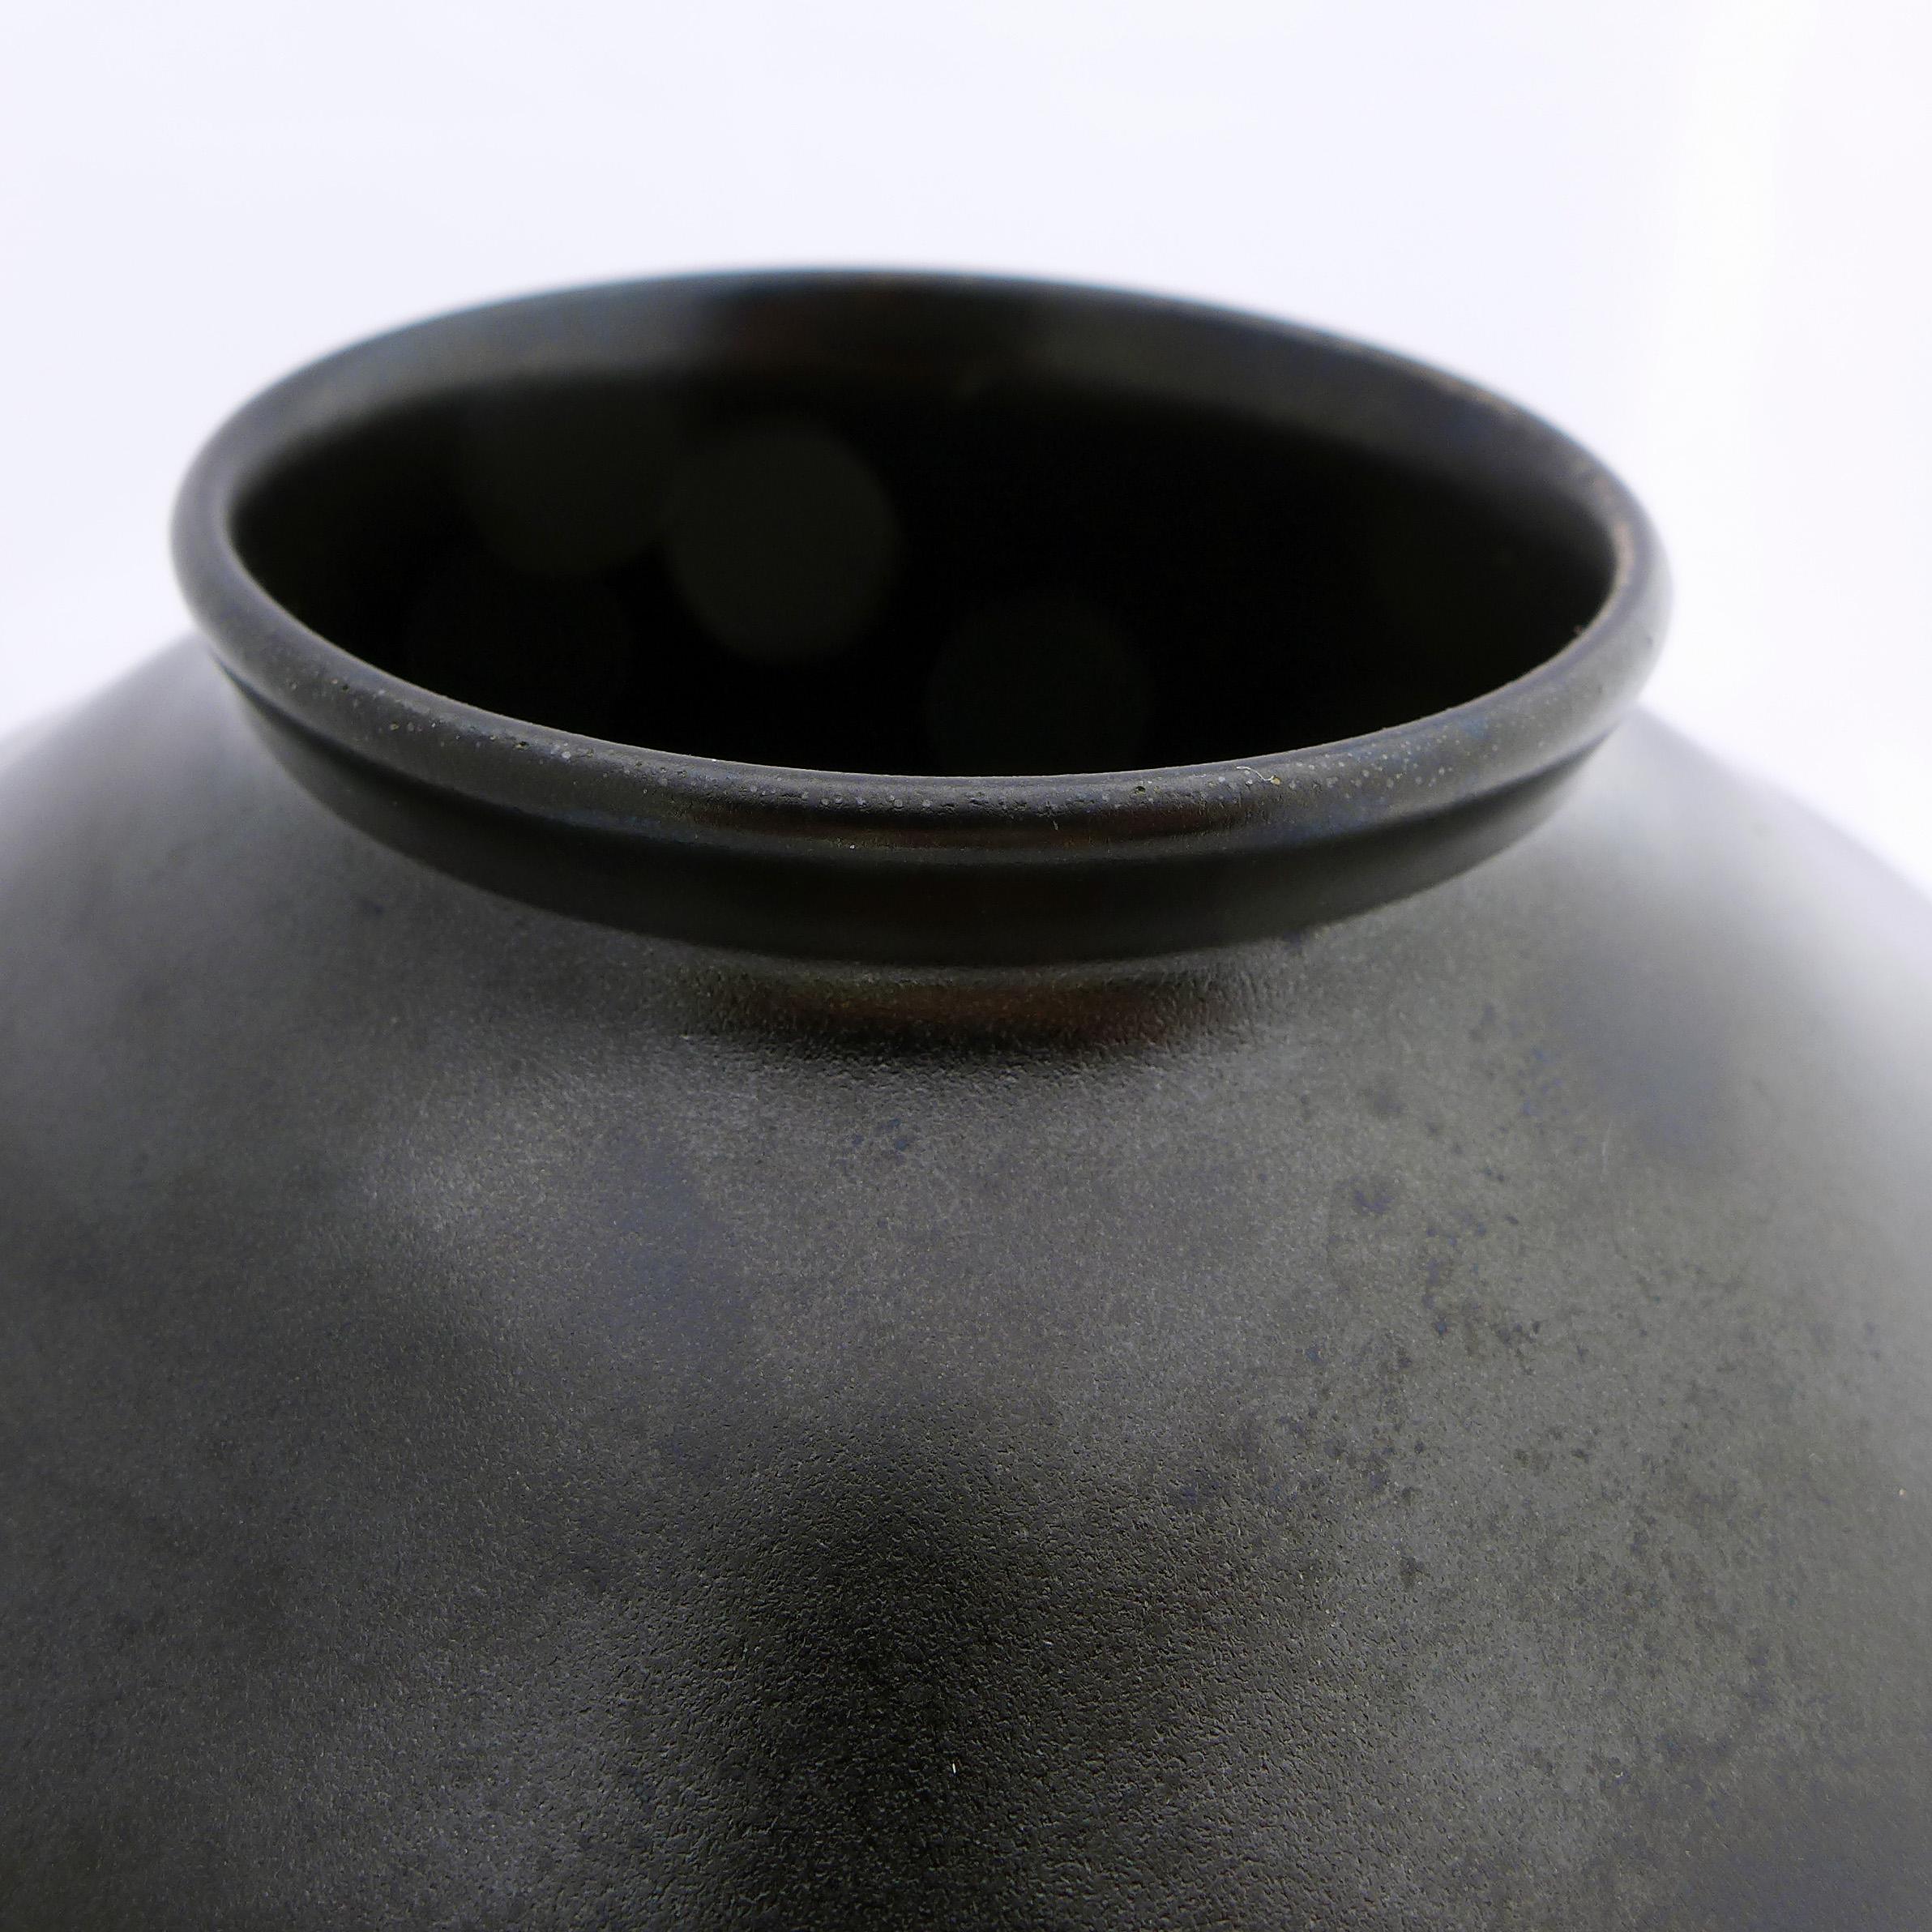 Dutch Black Art Deco Ceramic Vase For Sale